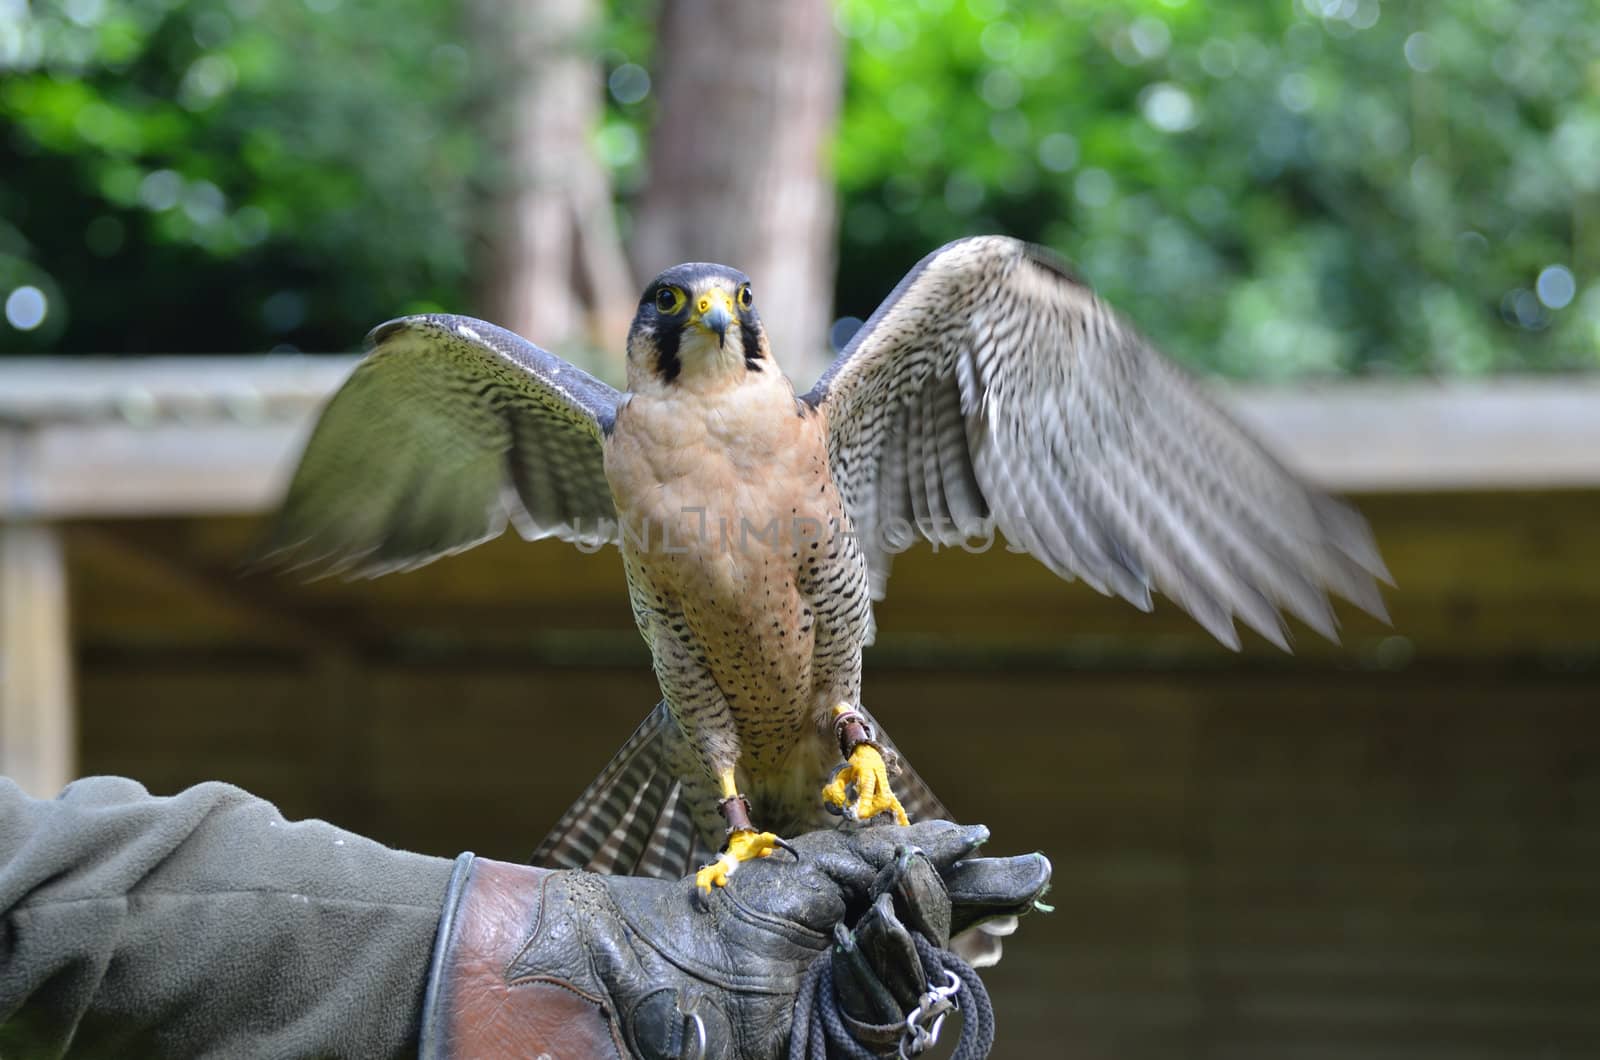 Hawk on glove by pauws99